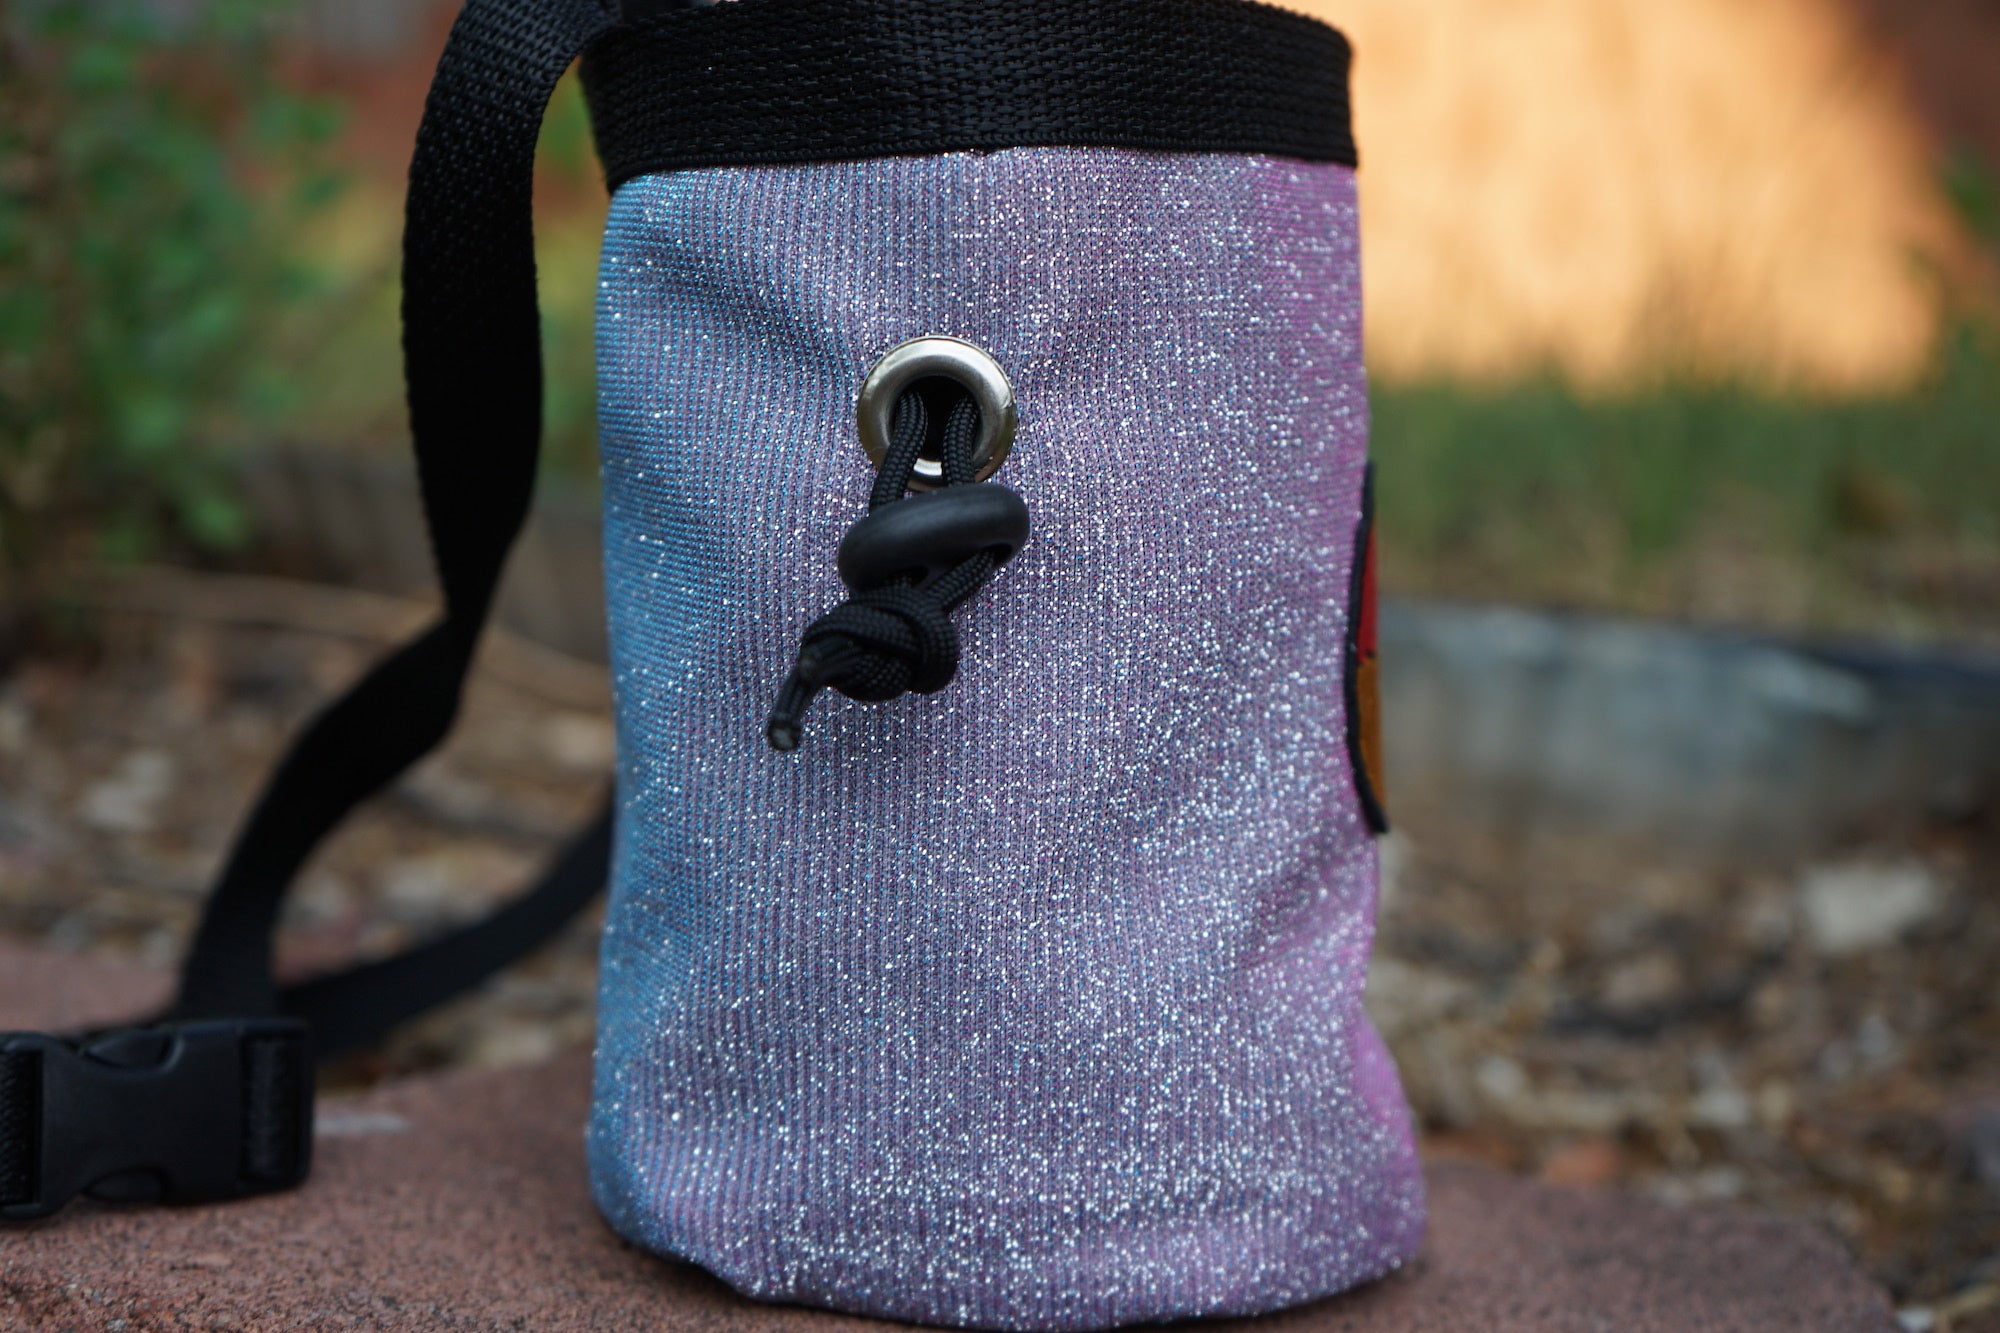 Sparkly Purple Shimmer Bag